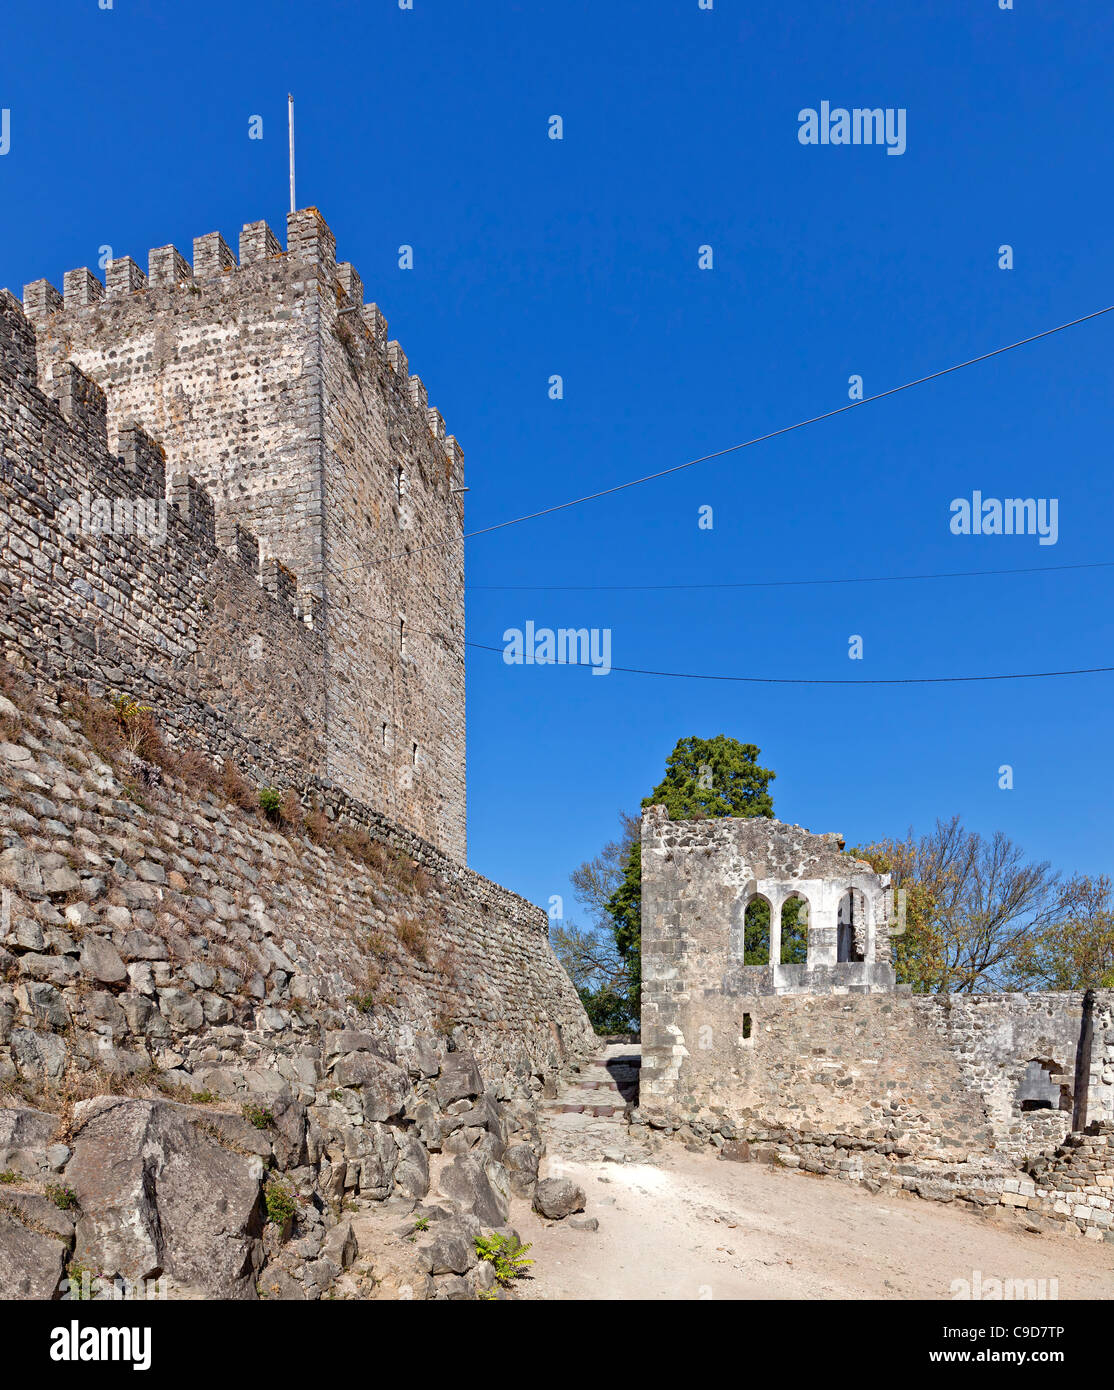 Le château de Leiria. Leiria, Portugal. Banque D'Images